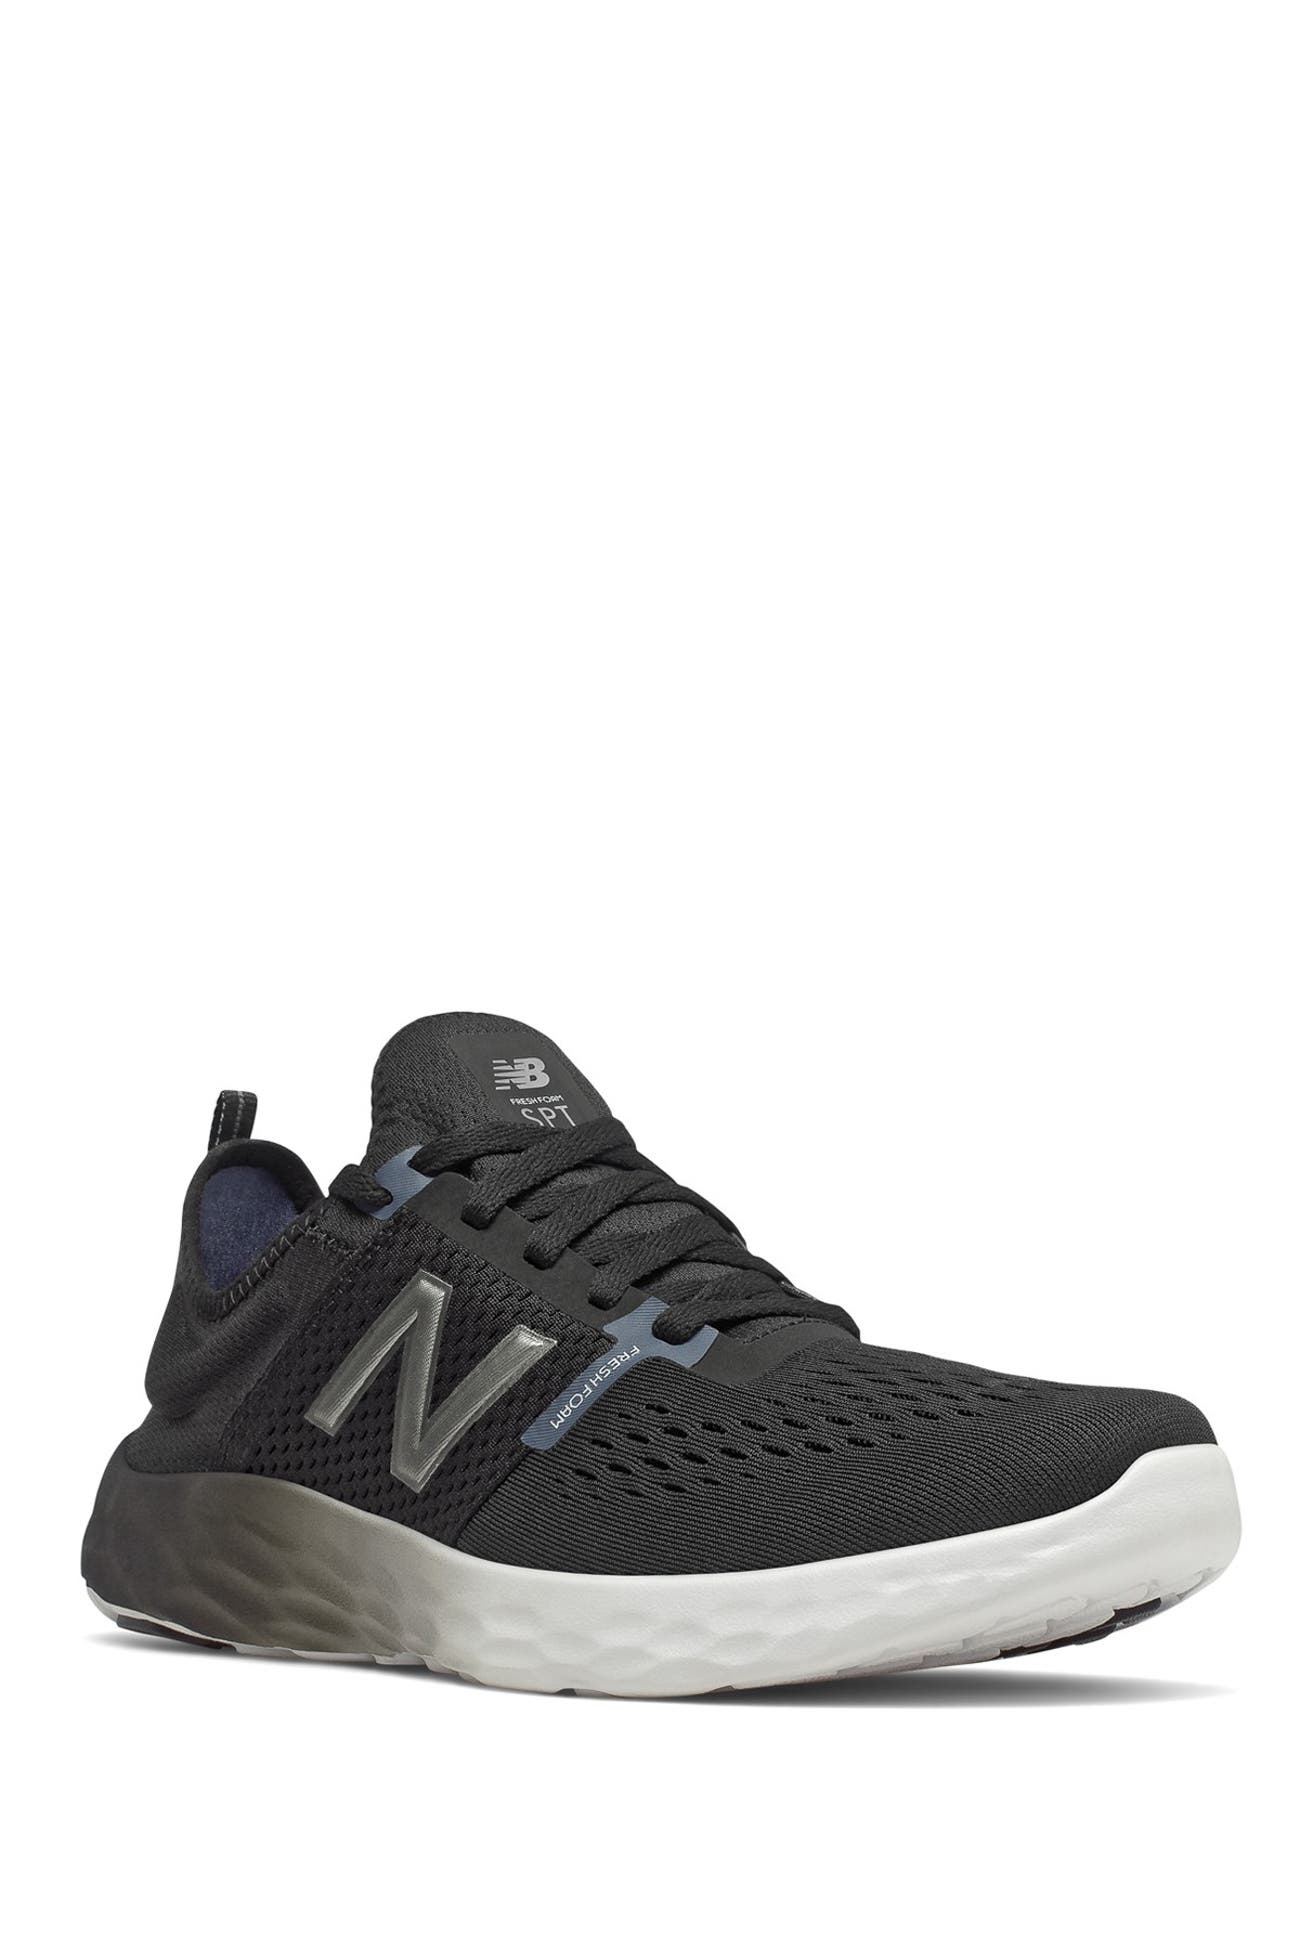 New Balance | Fresh Foam Sport V2 Running Sneaker | Nordstrom Rack